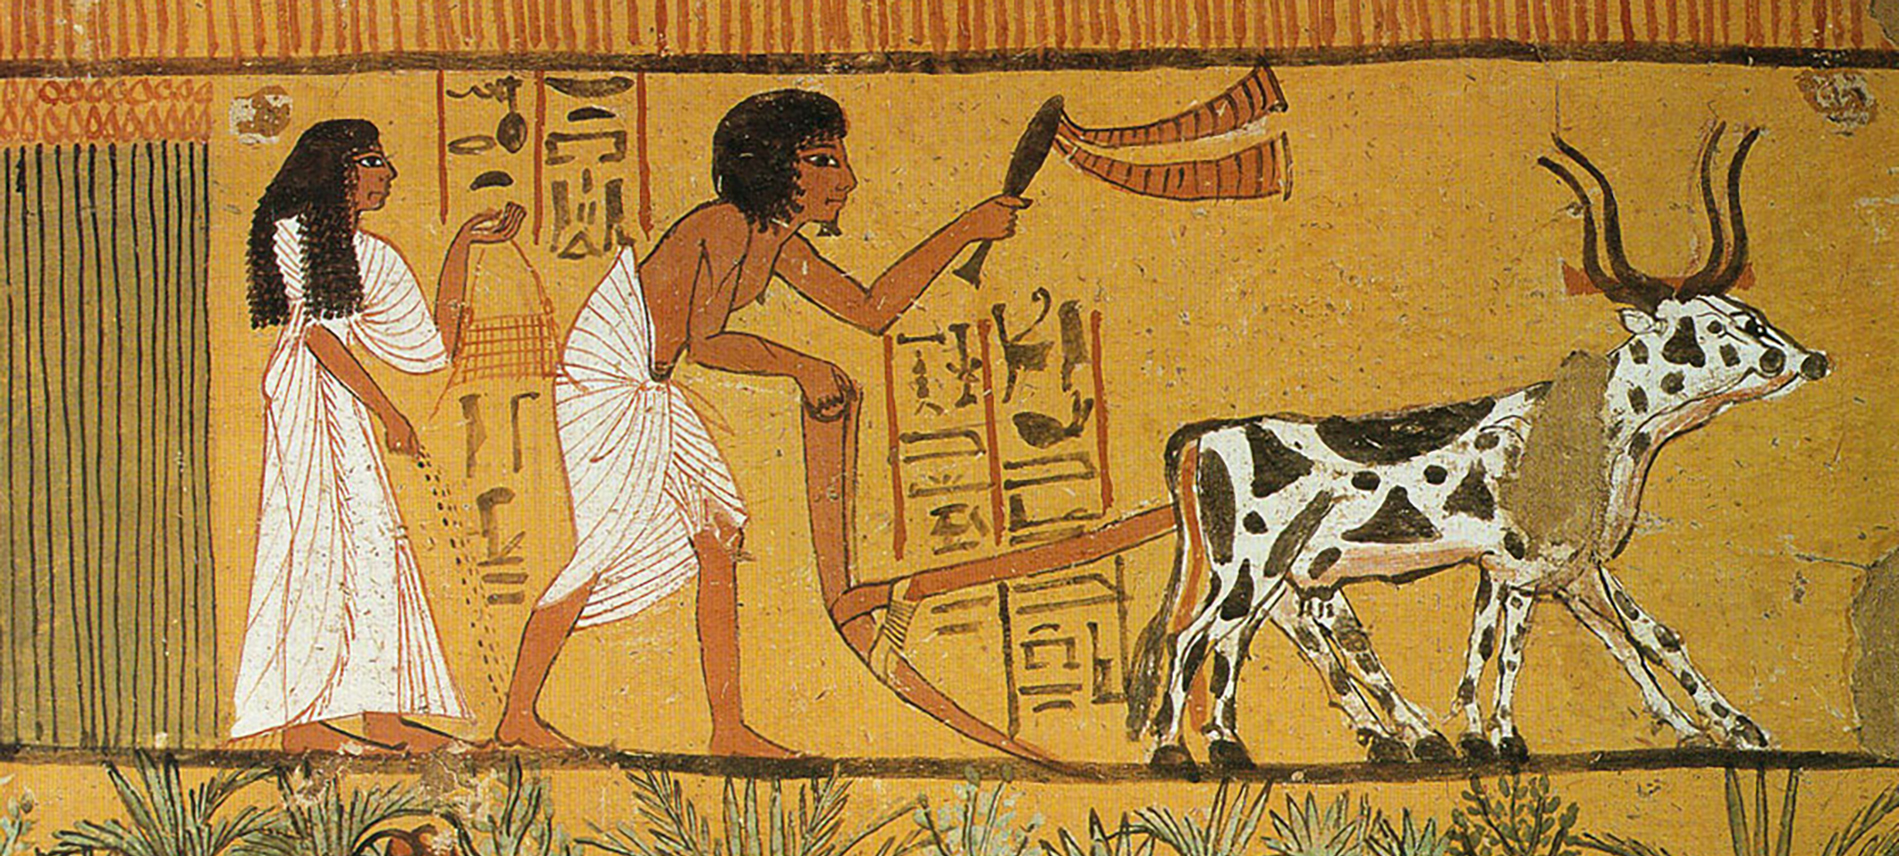 Земледельцы в древнем Египте египтянами